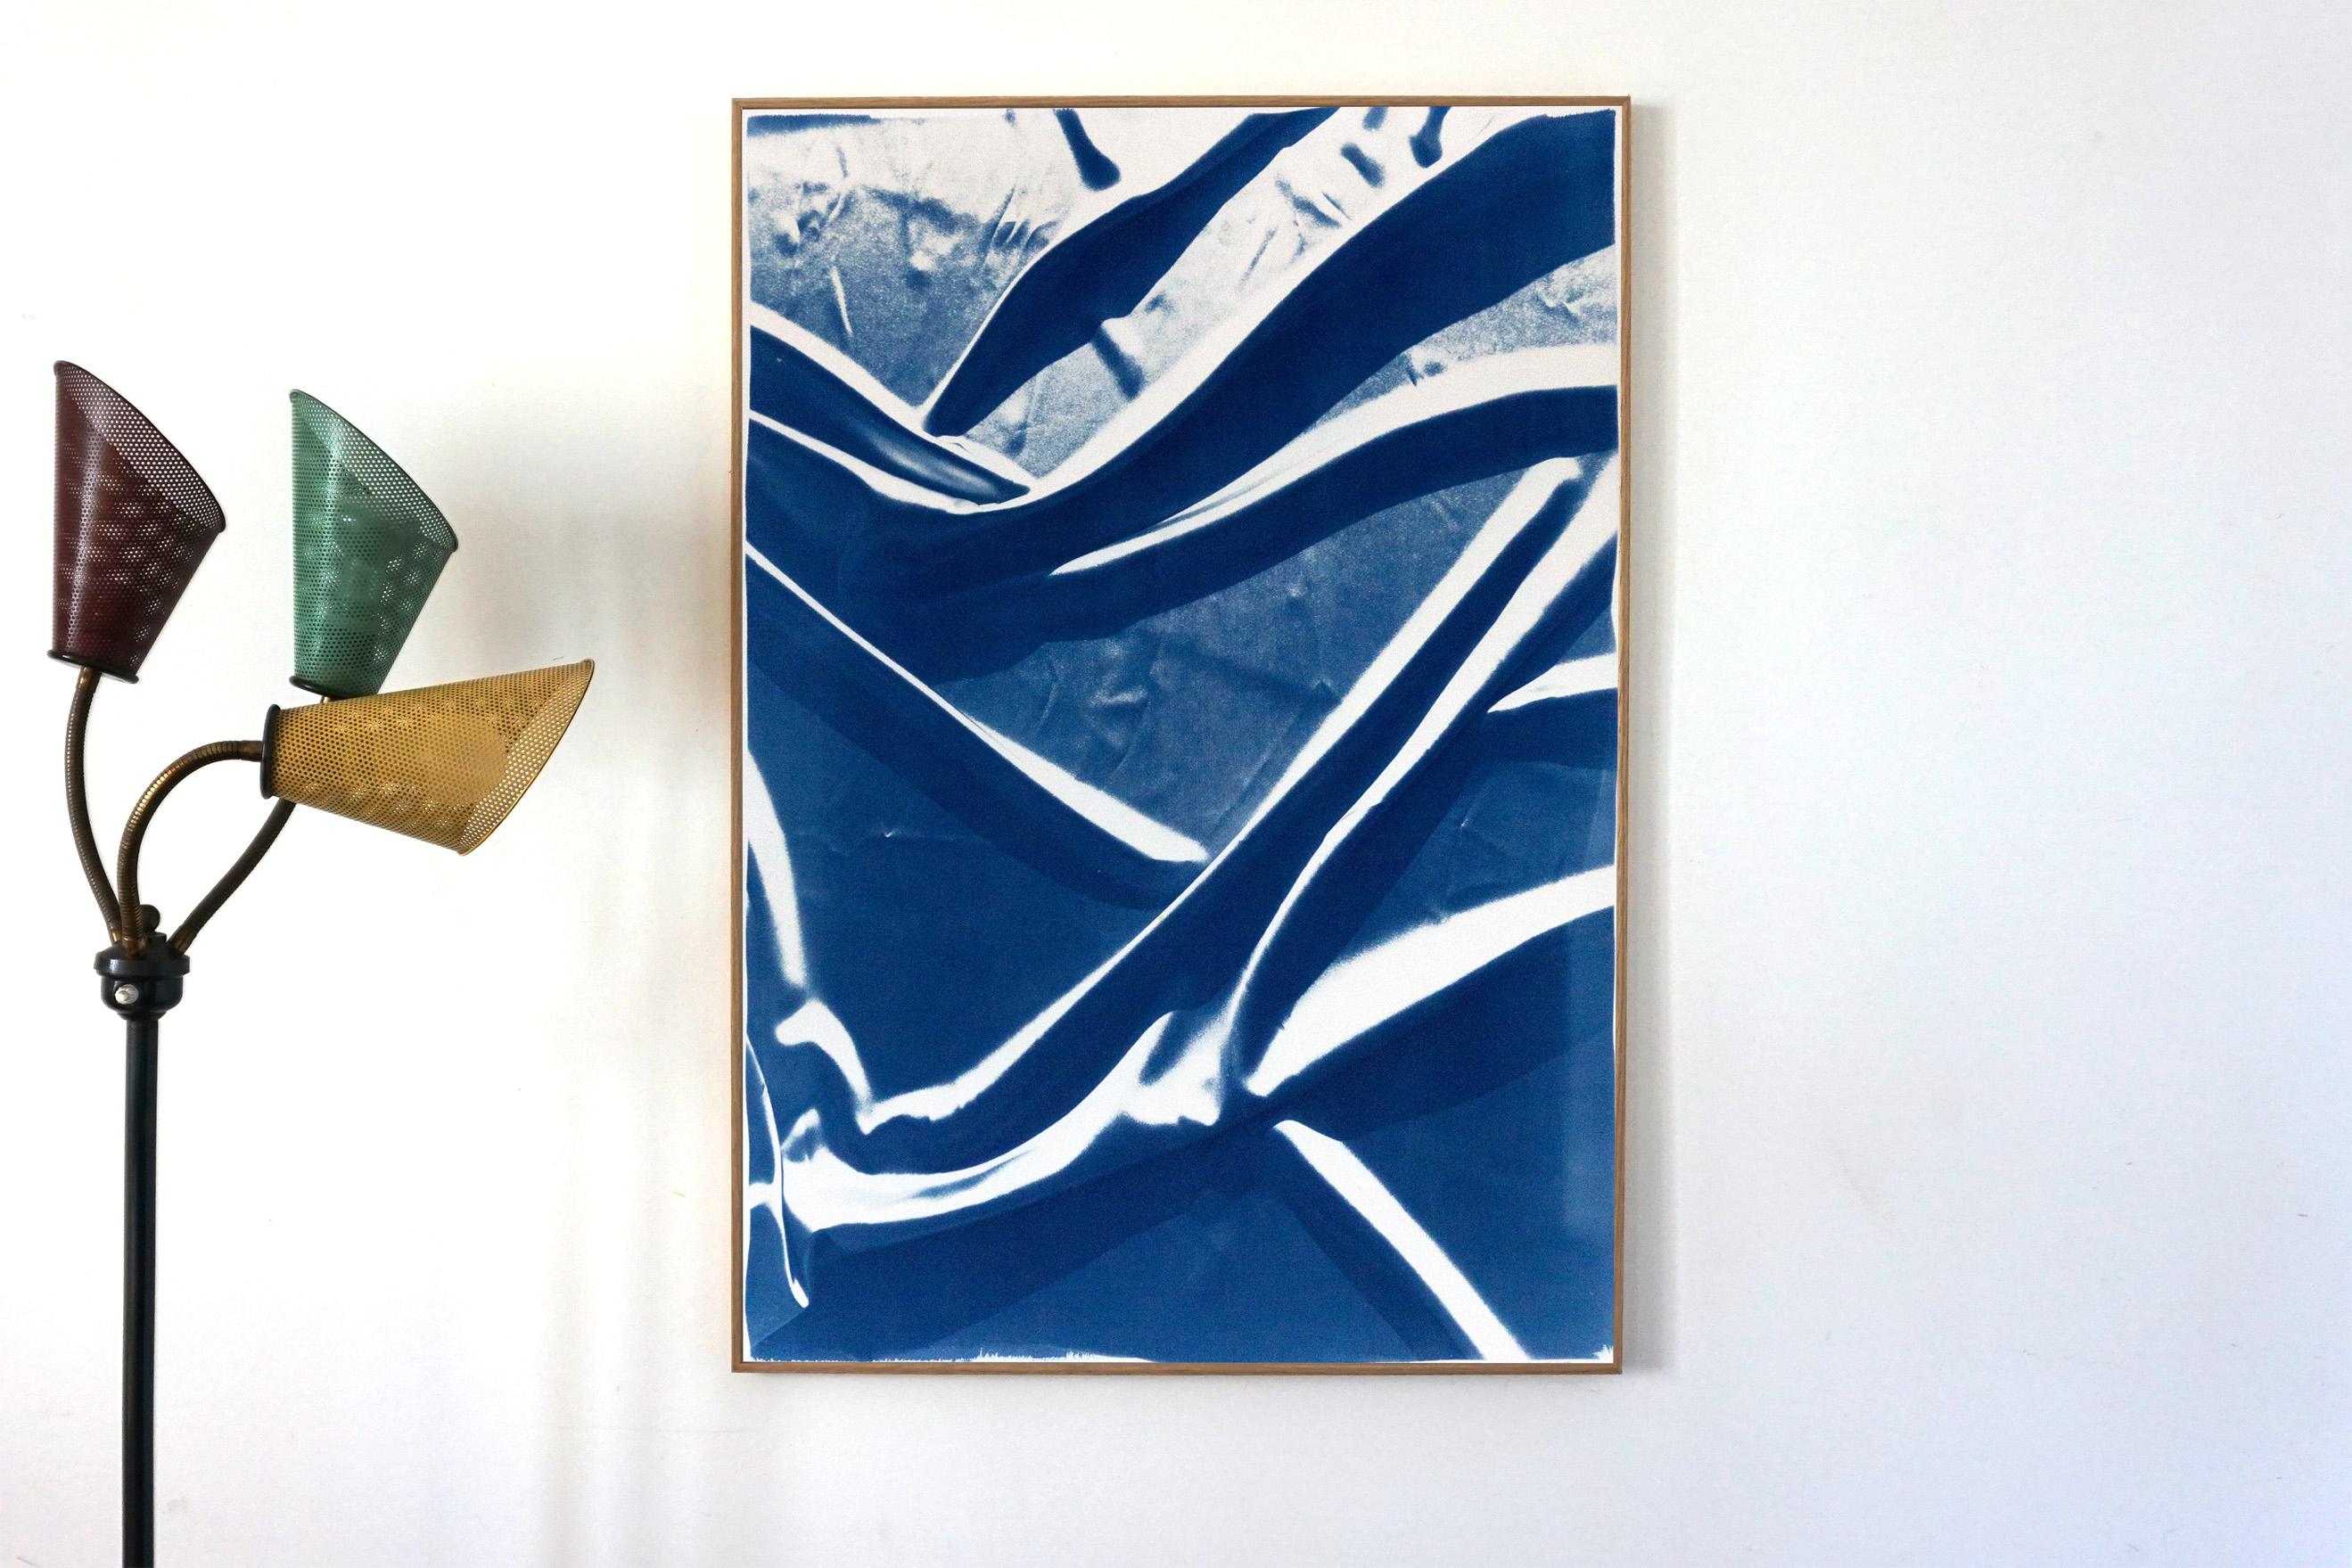 Motifs bleus classiques classiques, cyanotype fait à la main, tissu de soie lisse abstrait sur papier - Print de Kind of Cyan